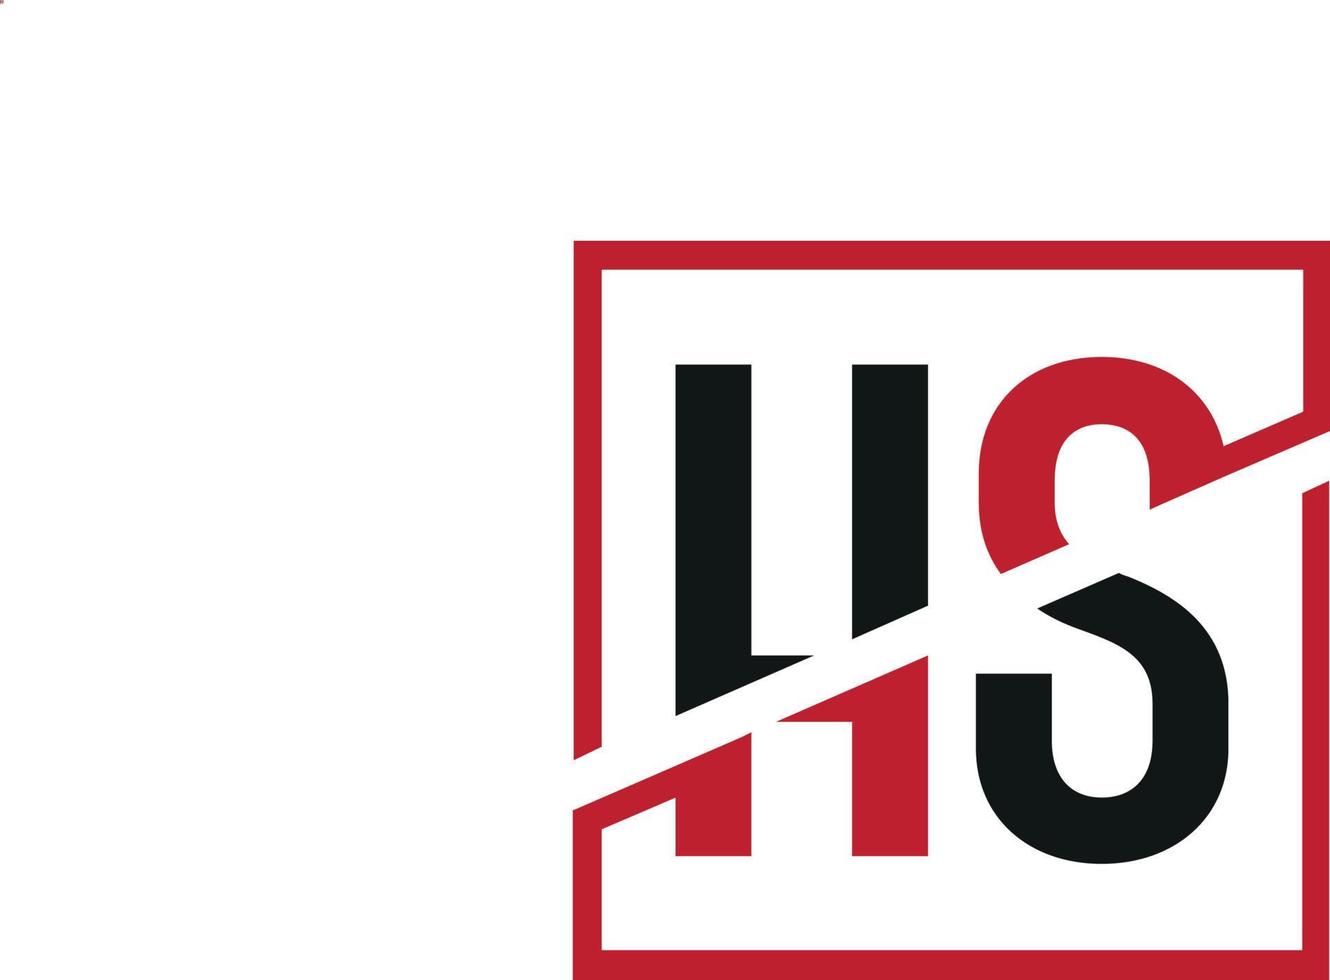 création de logo hs. conception initiale du monogramme du logo de la lettre hs en noir et rouge avec une forme carrée. vecteur pro